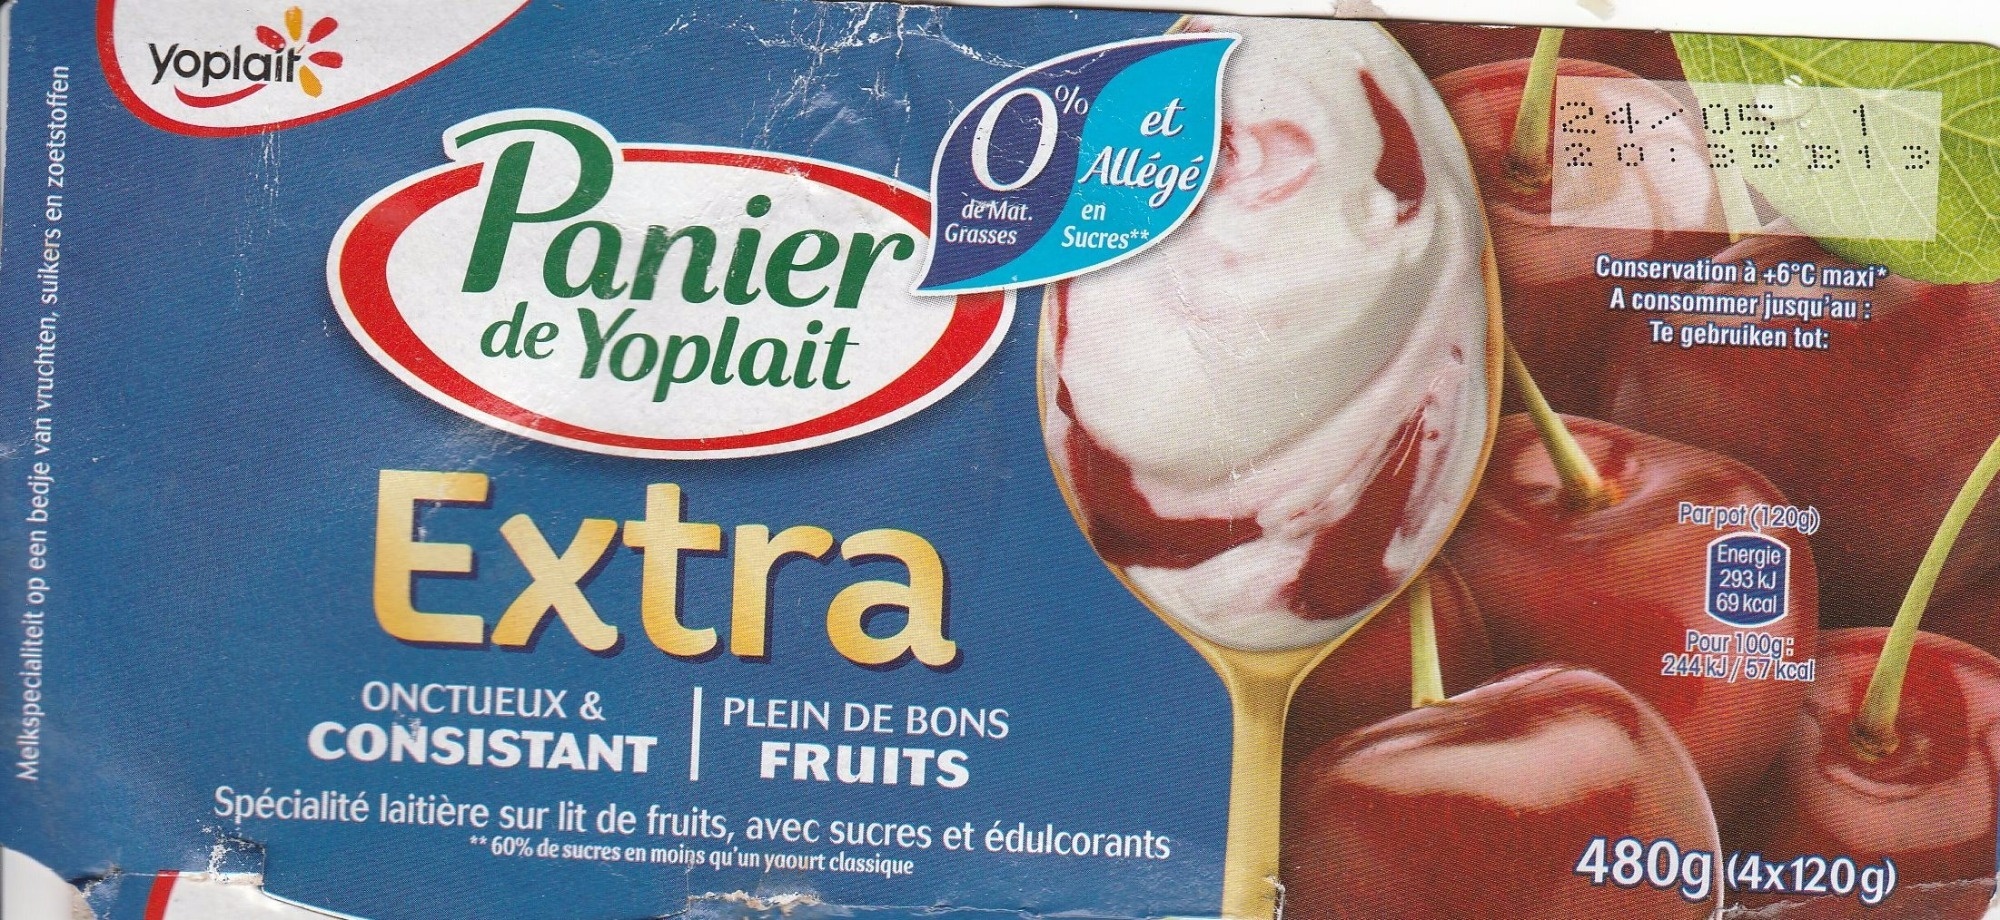 Panier de Yoplait Extra Cerise - Product - fr